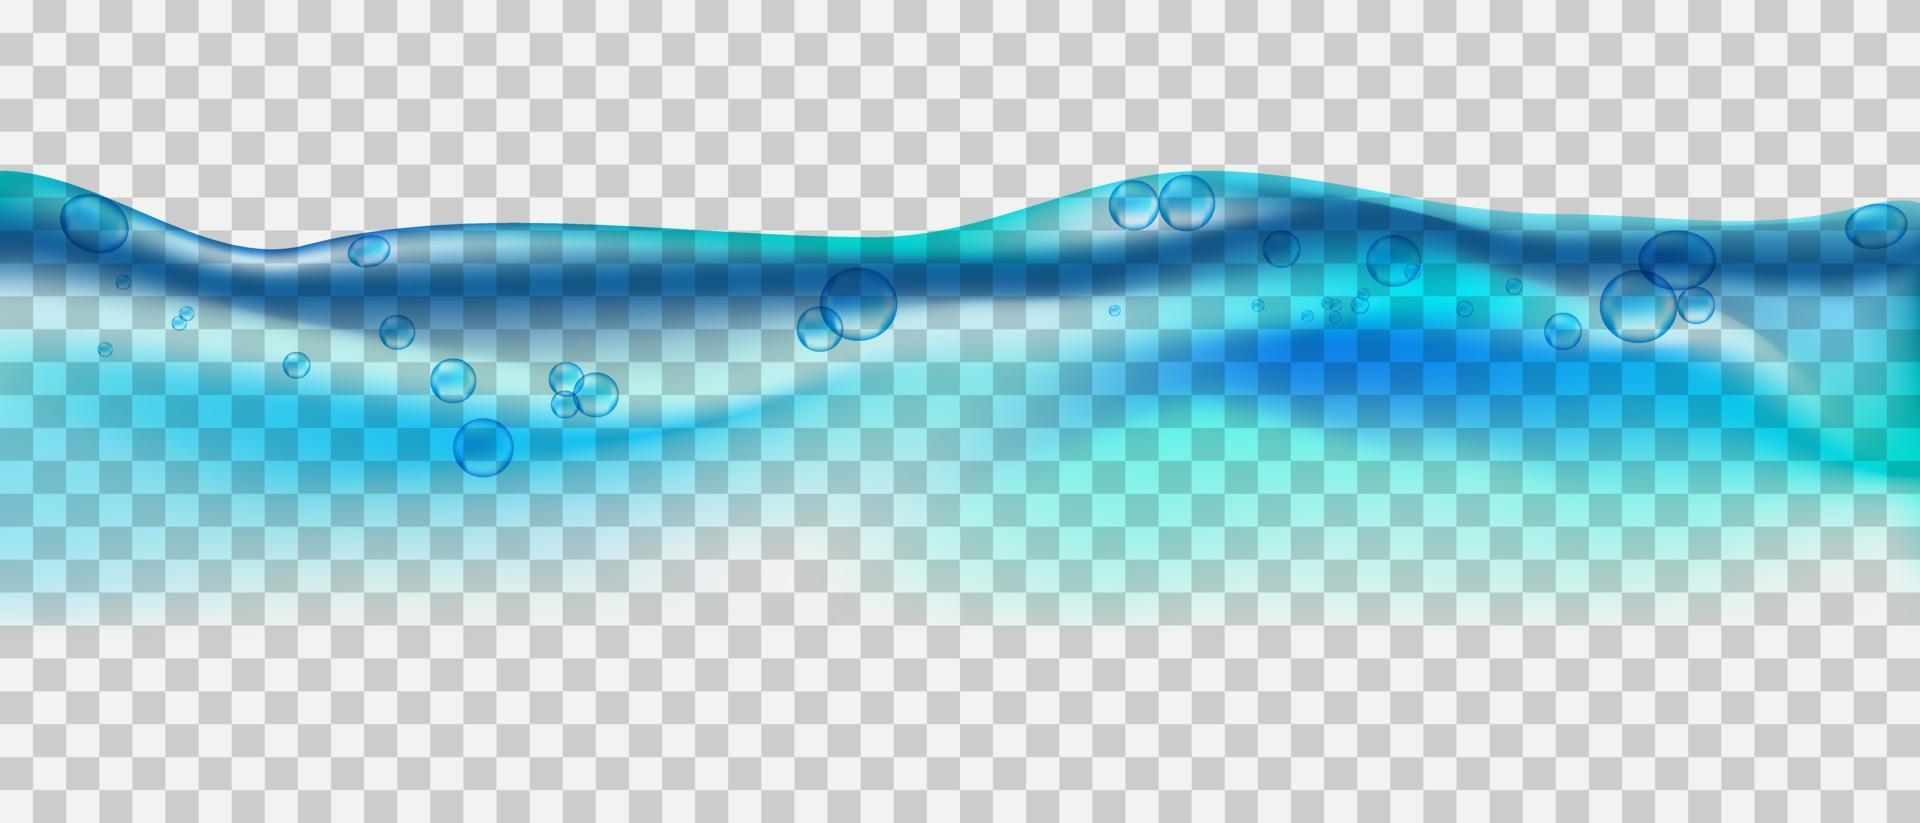 waterplons met luchtbellen vector